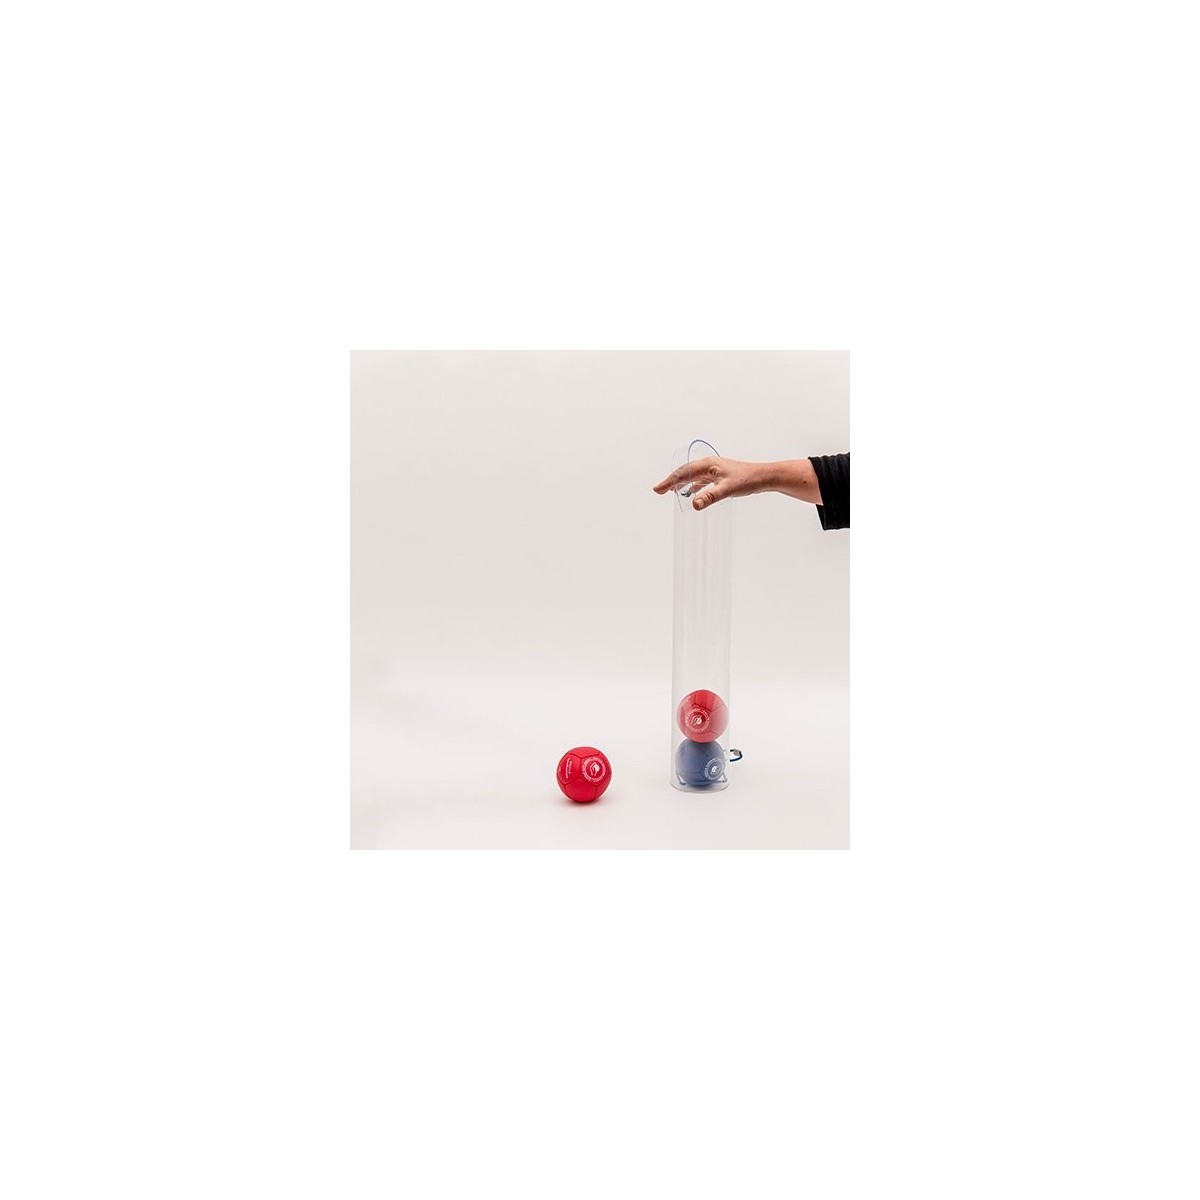 Ramasseur de boules de Boccia - 1 - Ramasseur de boules de Boccia, nouveau modèle
Facilite le ramassage des balles, même en pos